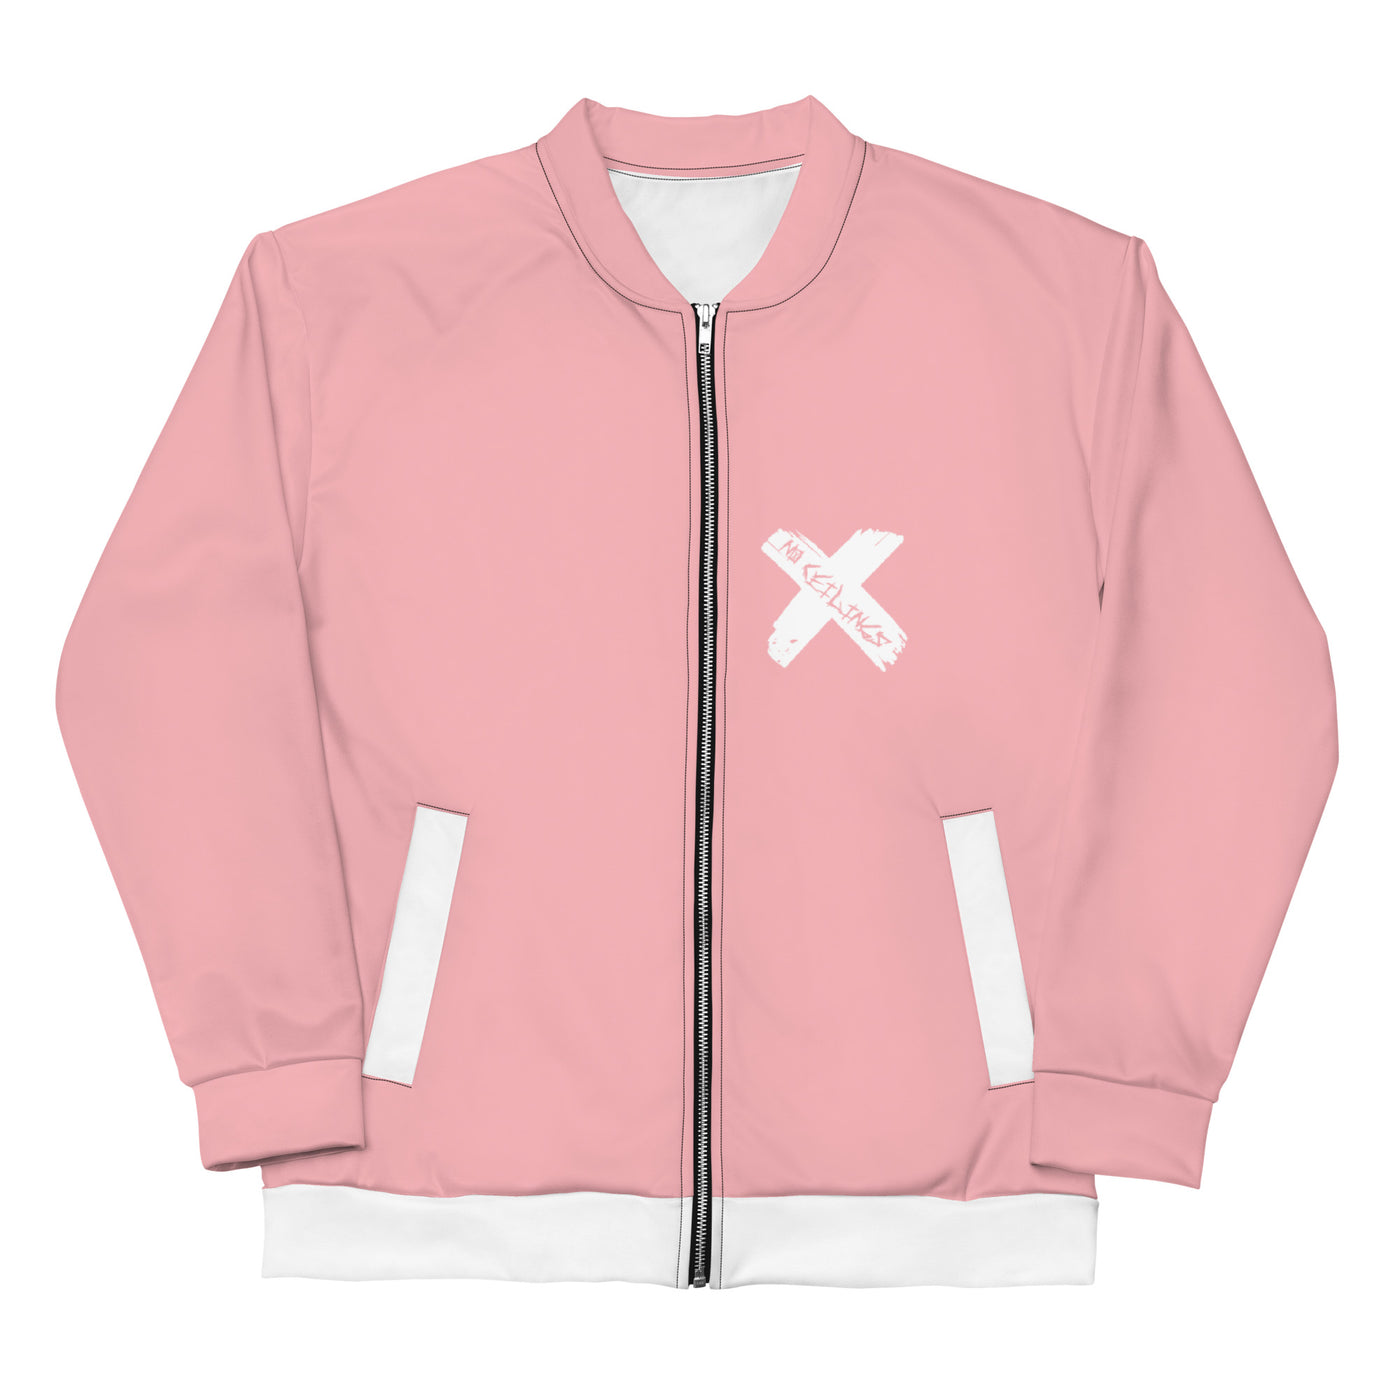 Think Pink Unisex Bomber Jacket